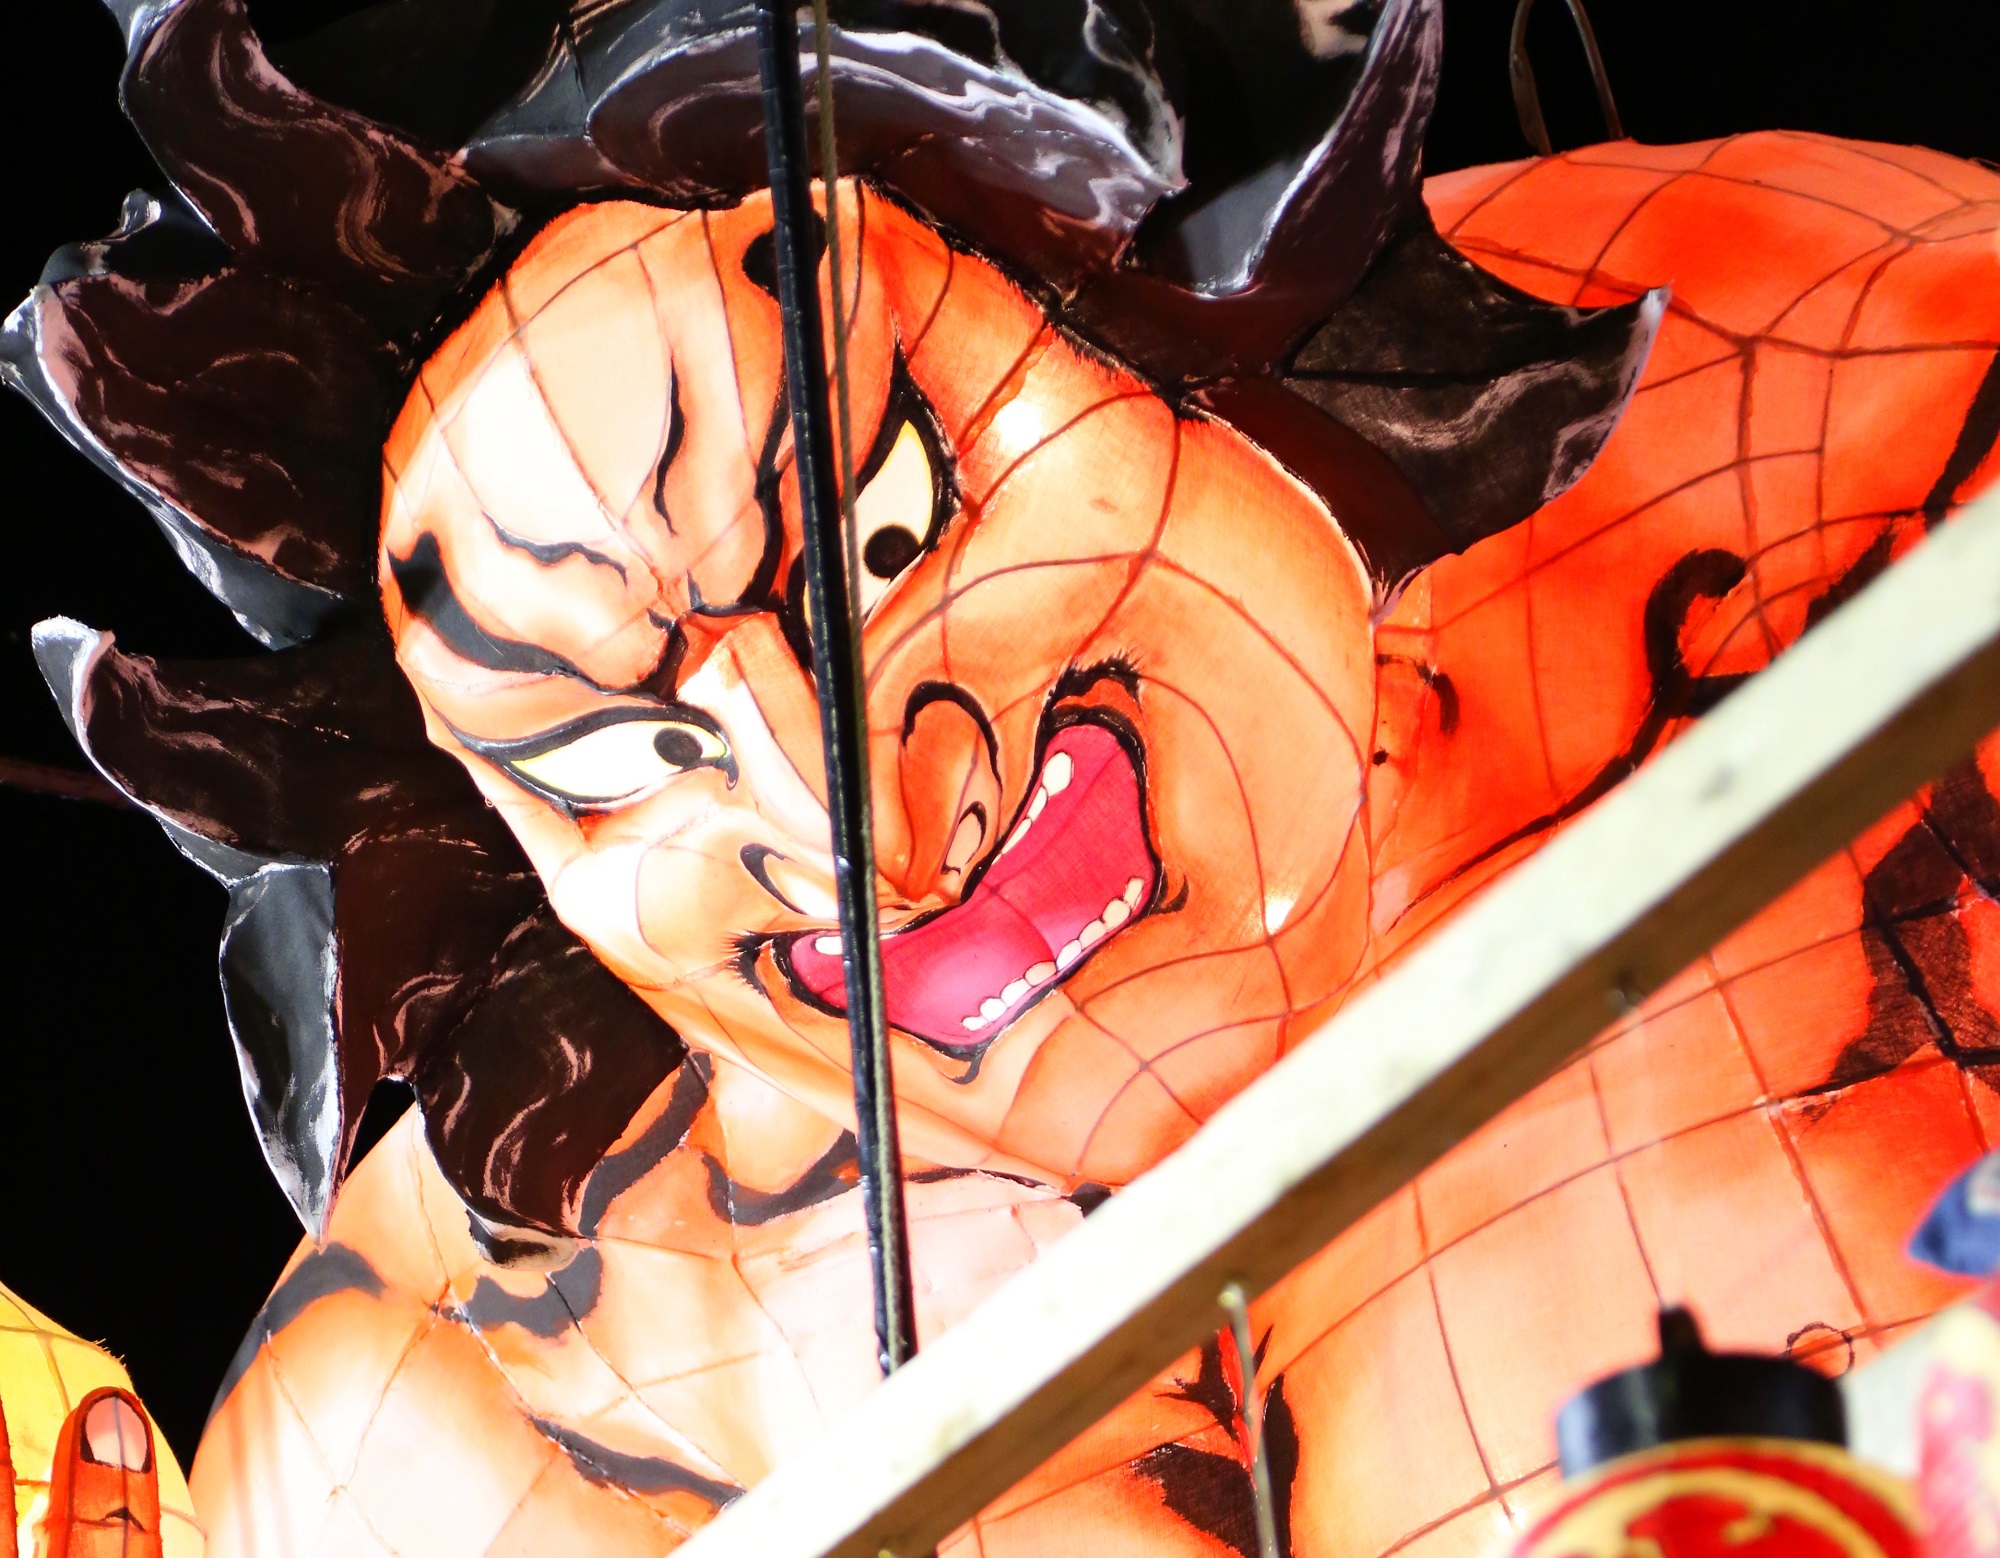 The Mashiko Gion Festival